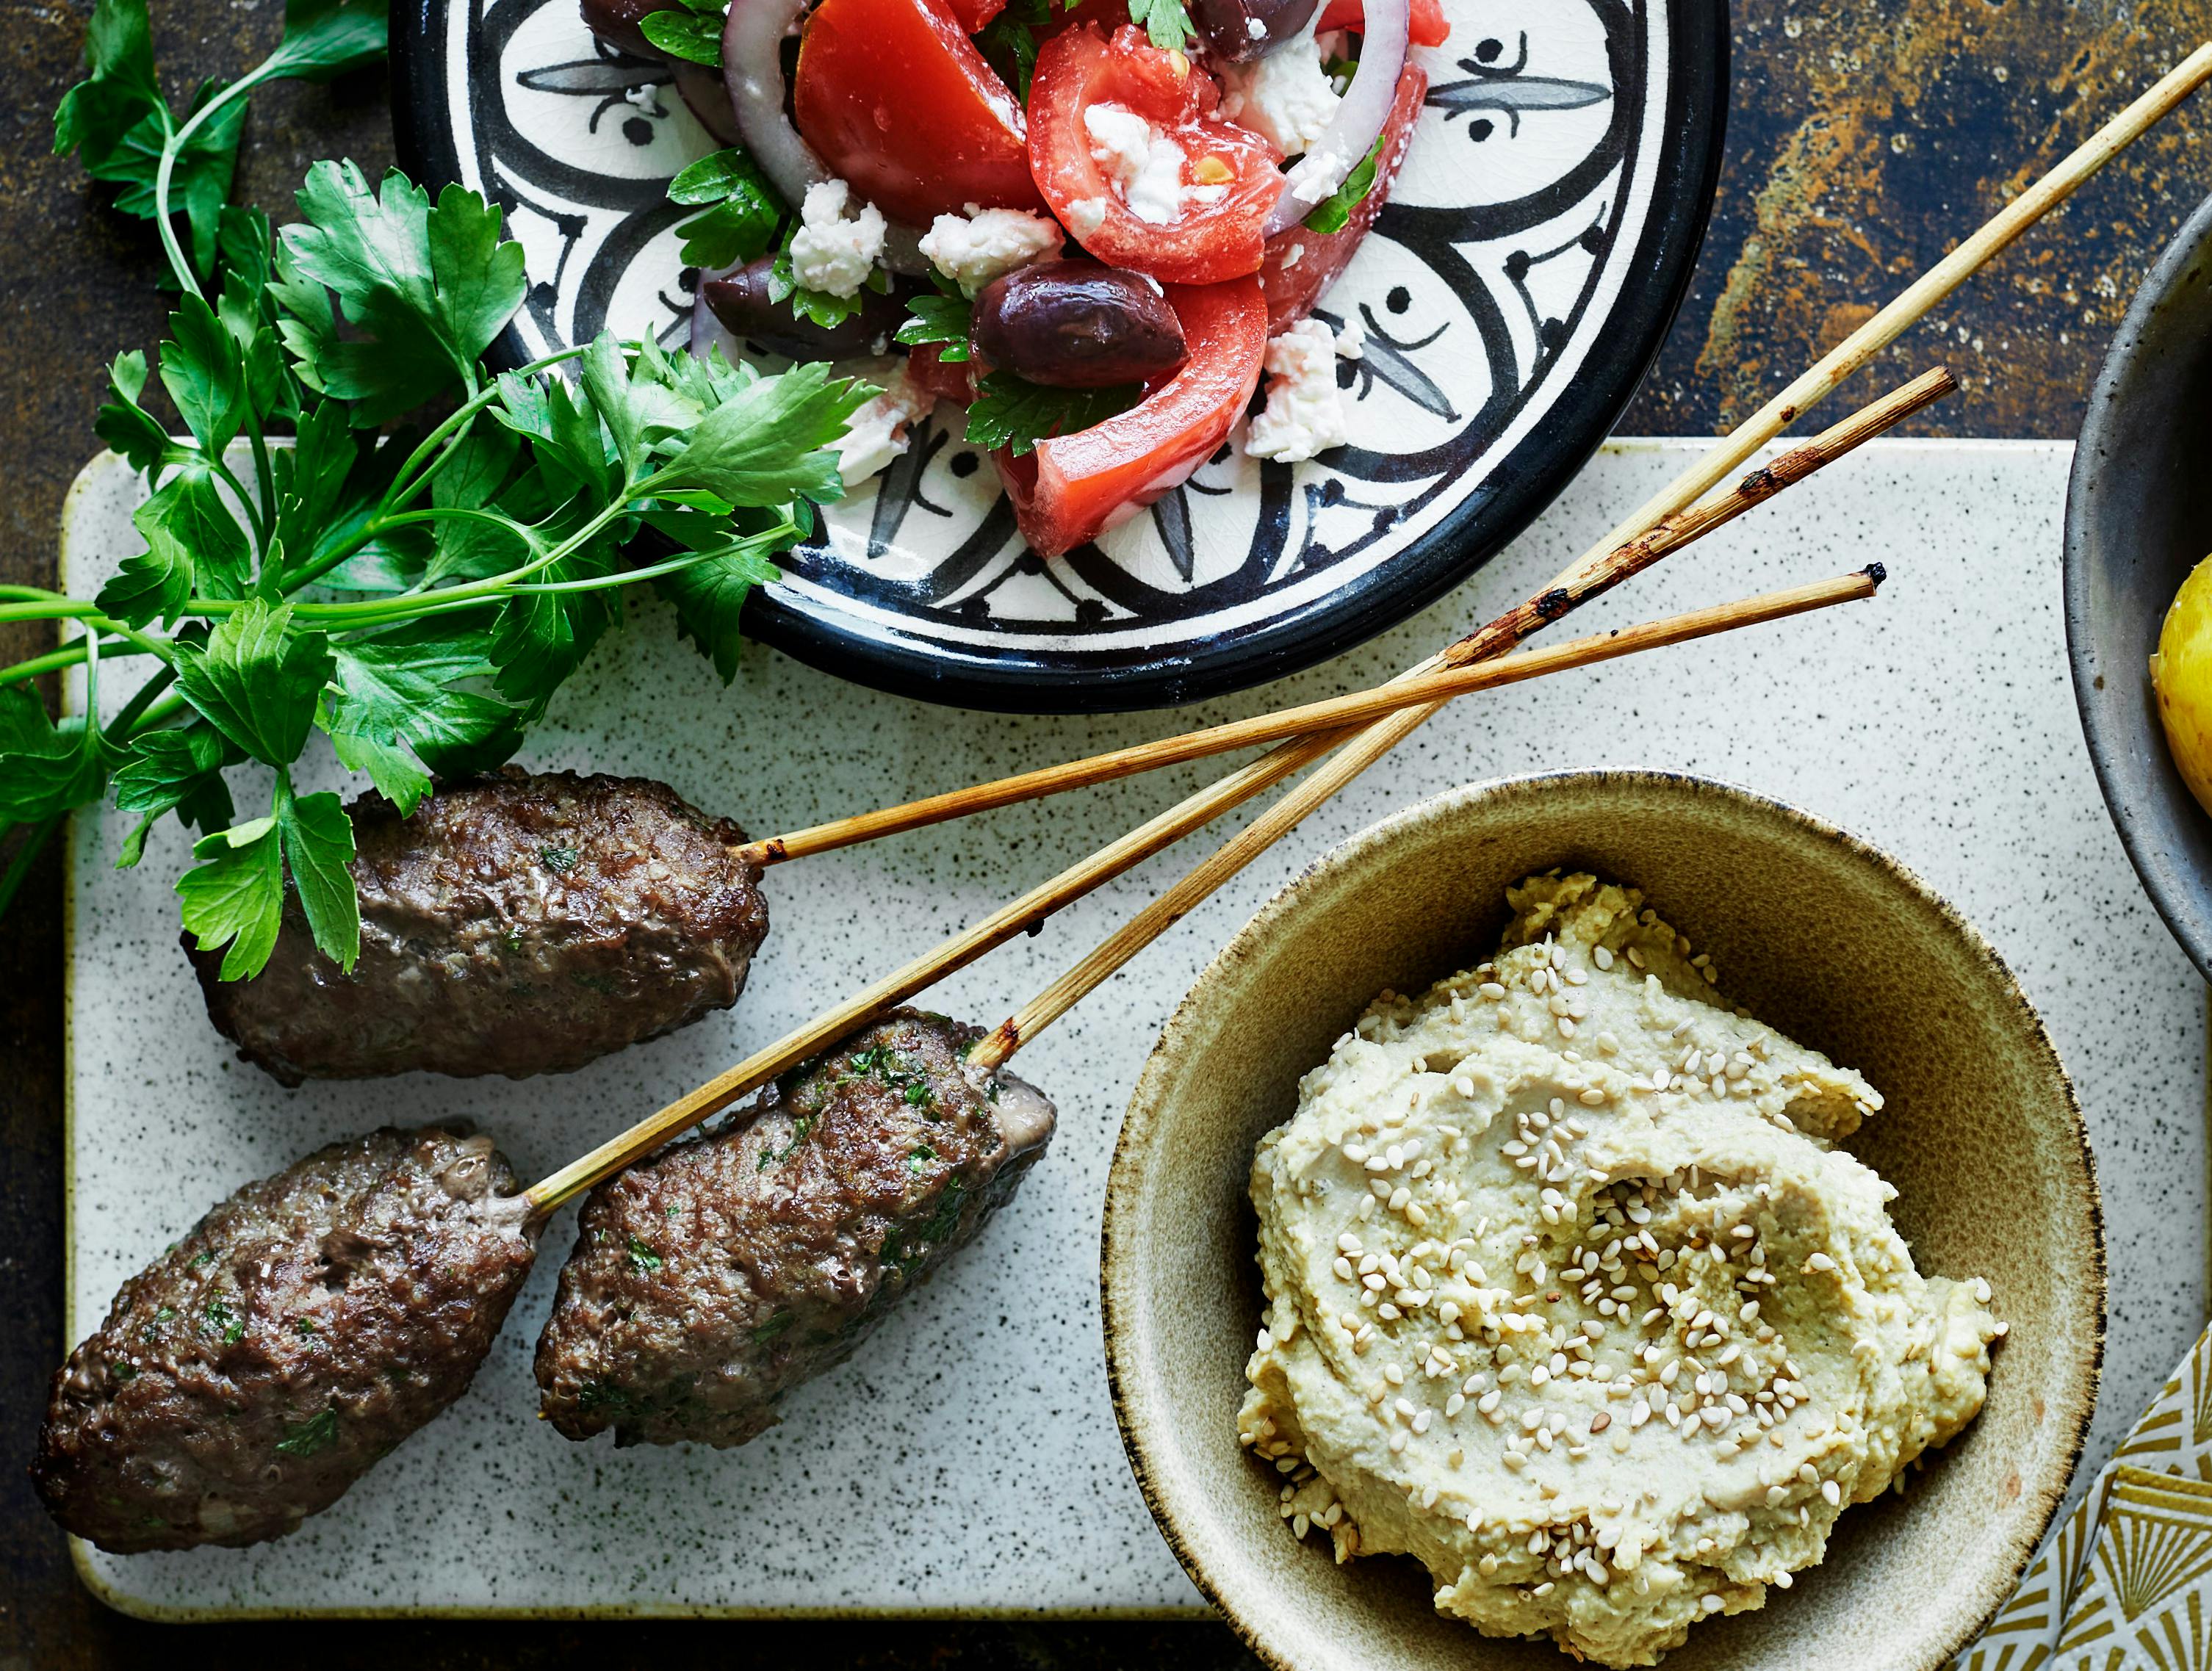 Har du brug for ny inspiration til nem hverdagsmad? Så prøv denne mellemøstlige ret, der er fyldt med masser af smag. 